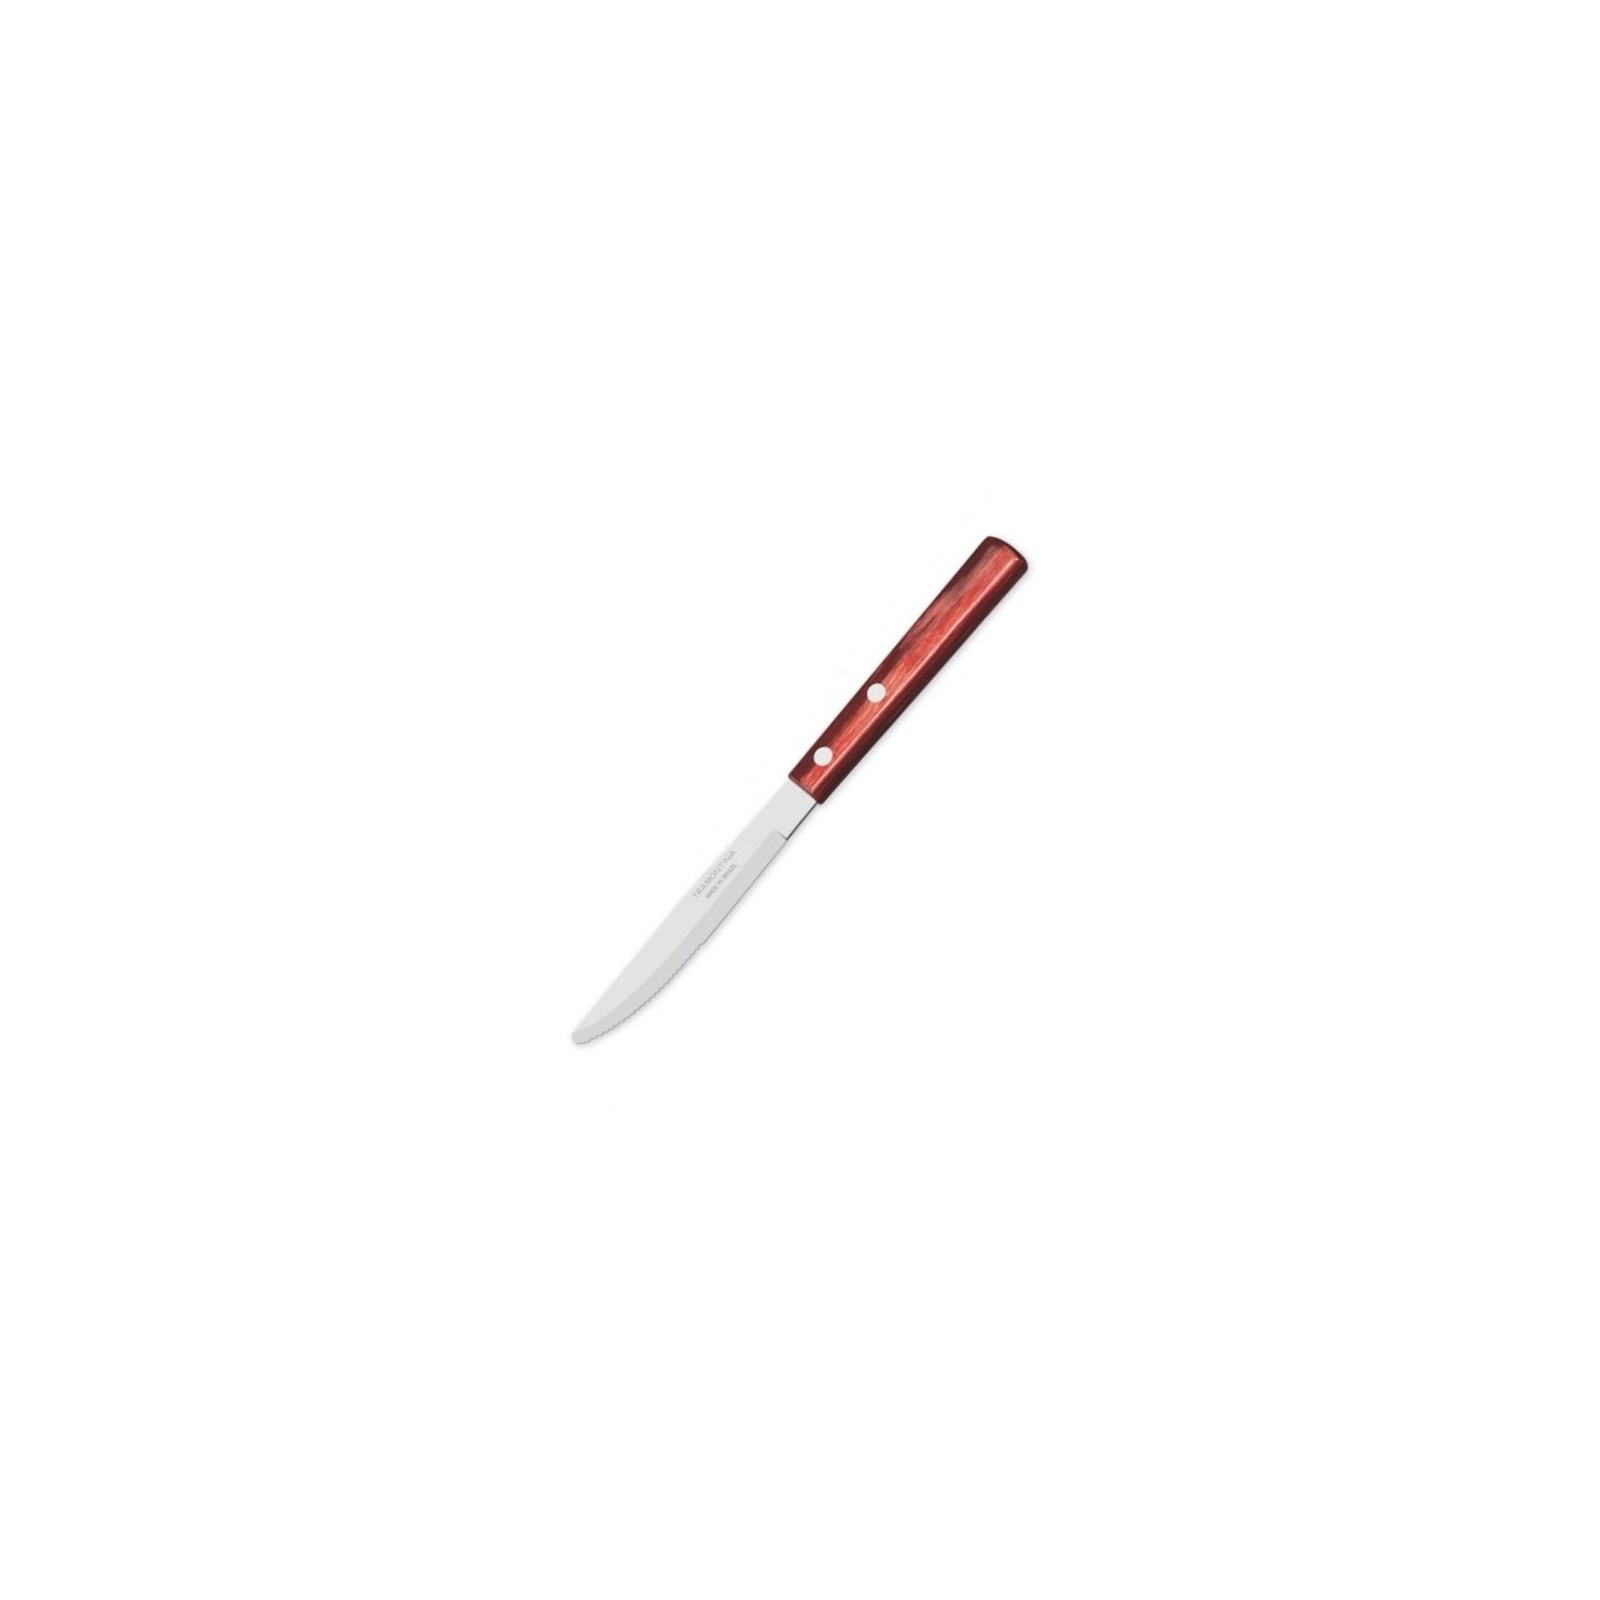 Столовый нож Tramontina Polywood 1 шт Червоне дерево (21101/474)